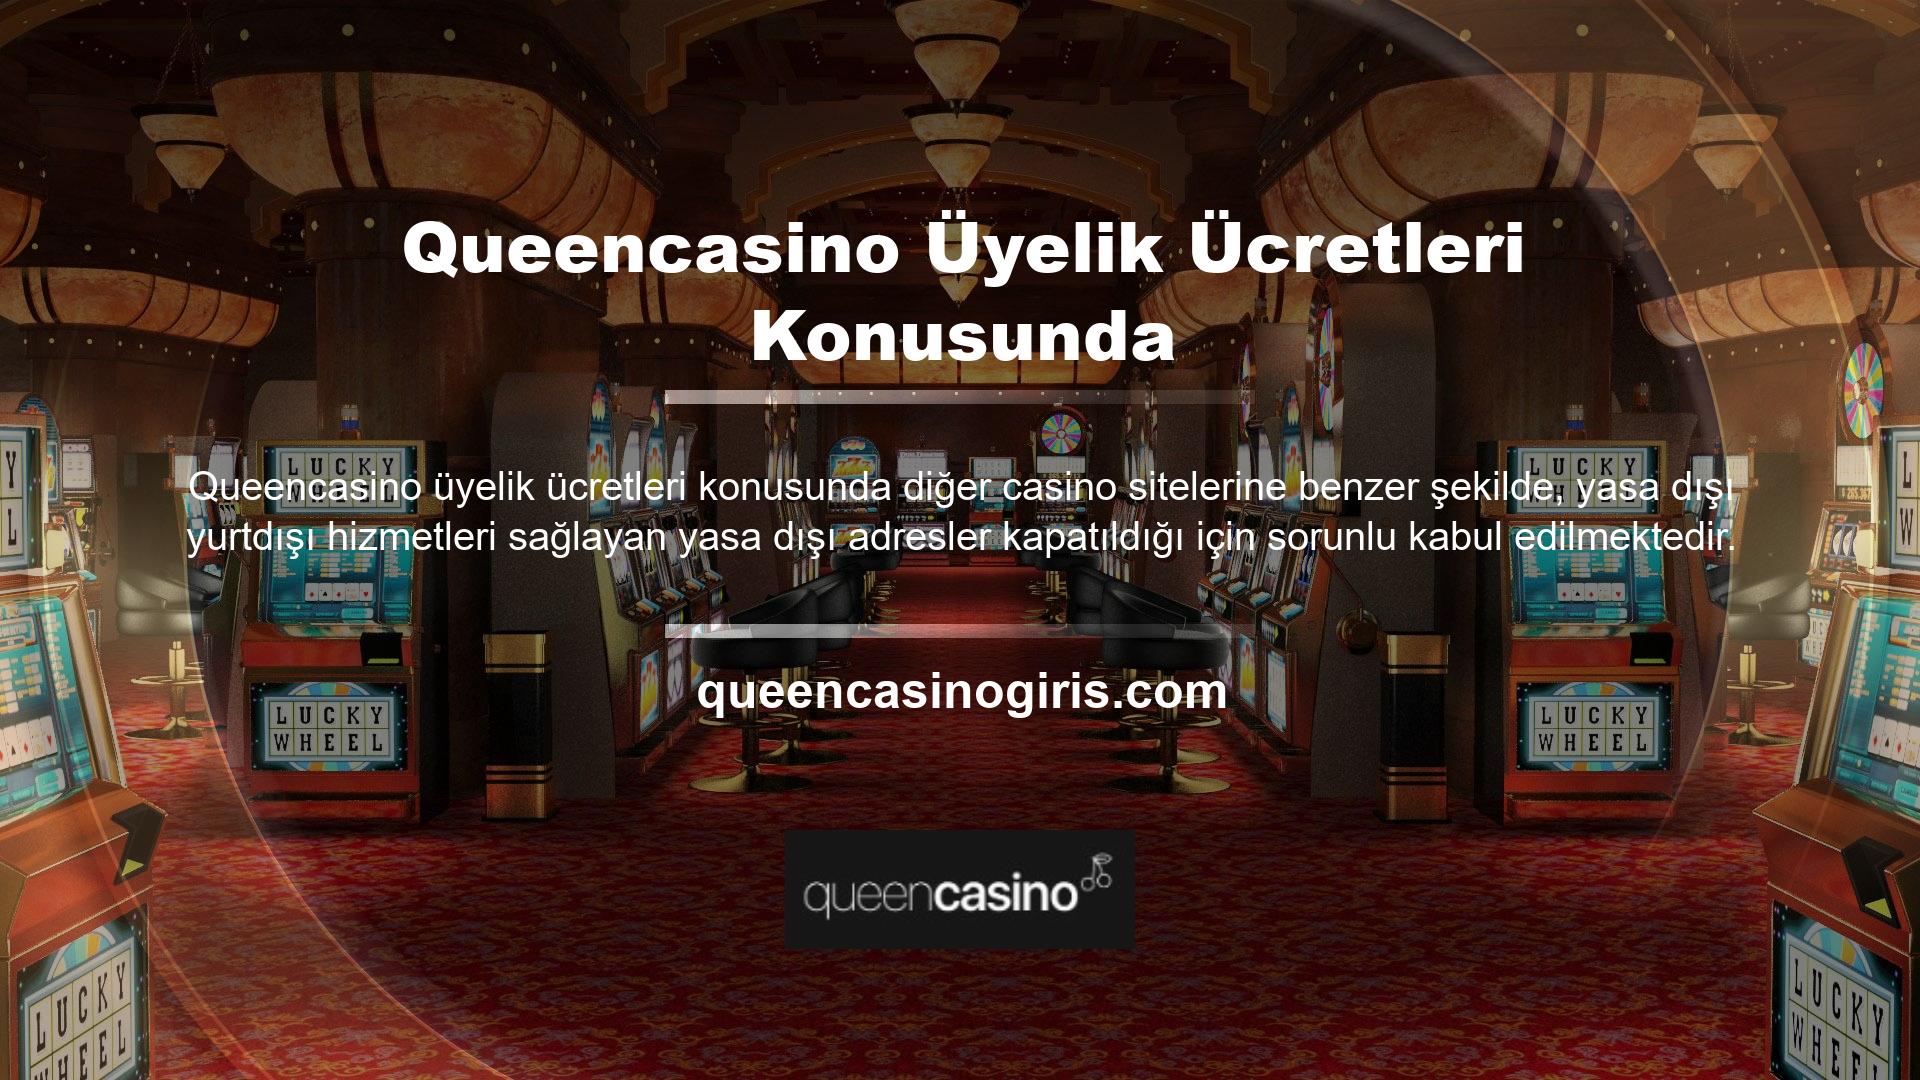 Queencasino kapalı mı ve bölgede yeni kullanıcılar için giriş engelleriyle mi karşılaşıyor? Queencasino hesabıma nasıl ulaşırım, şikayet sitelerinde buna benzer konular açılıyor